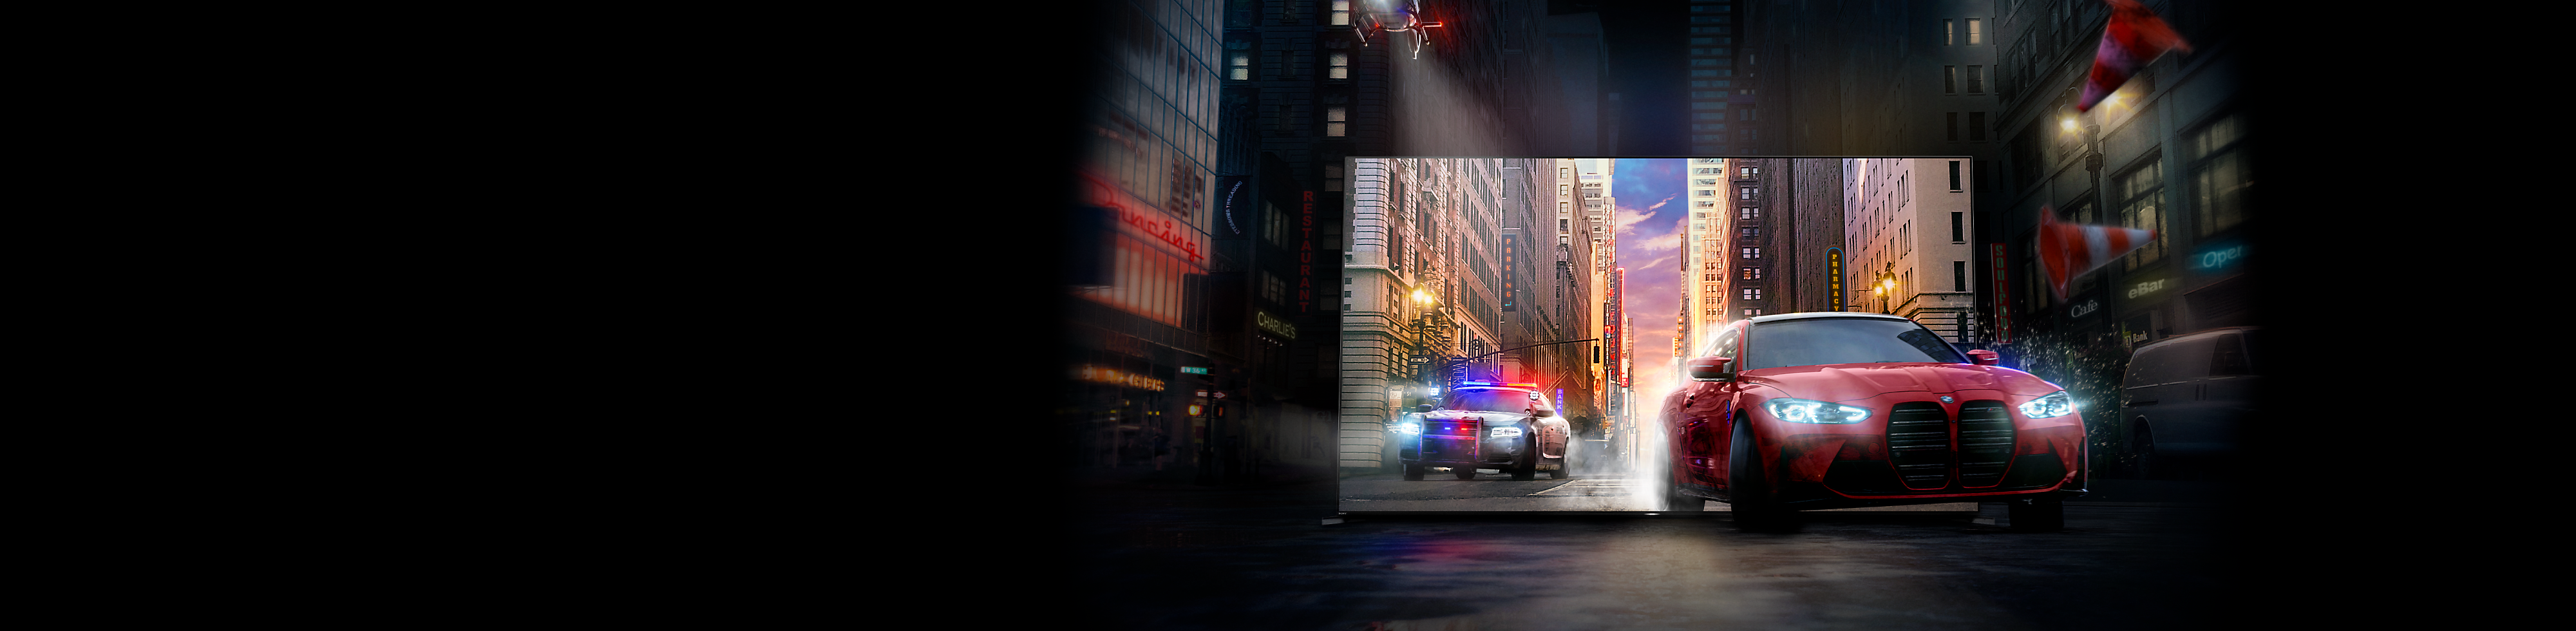 Ein rotes Auto, gefolgt von einem Polizeiauto, fährt aus einem BRAVIA Fernsehbildschirm heraus auf eine Stadtstraße